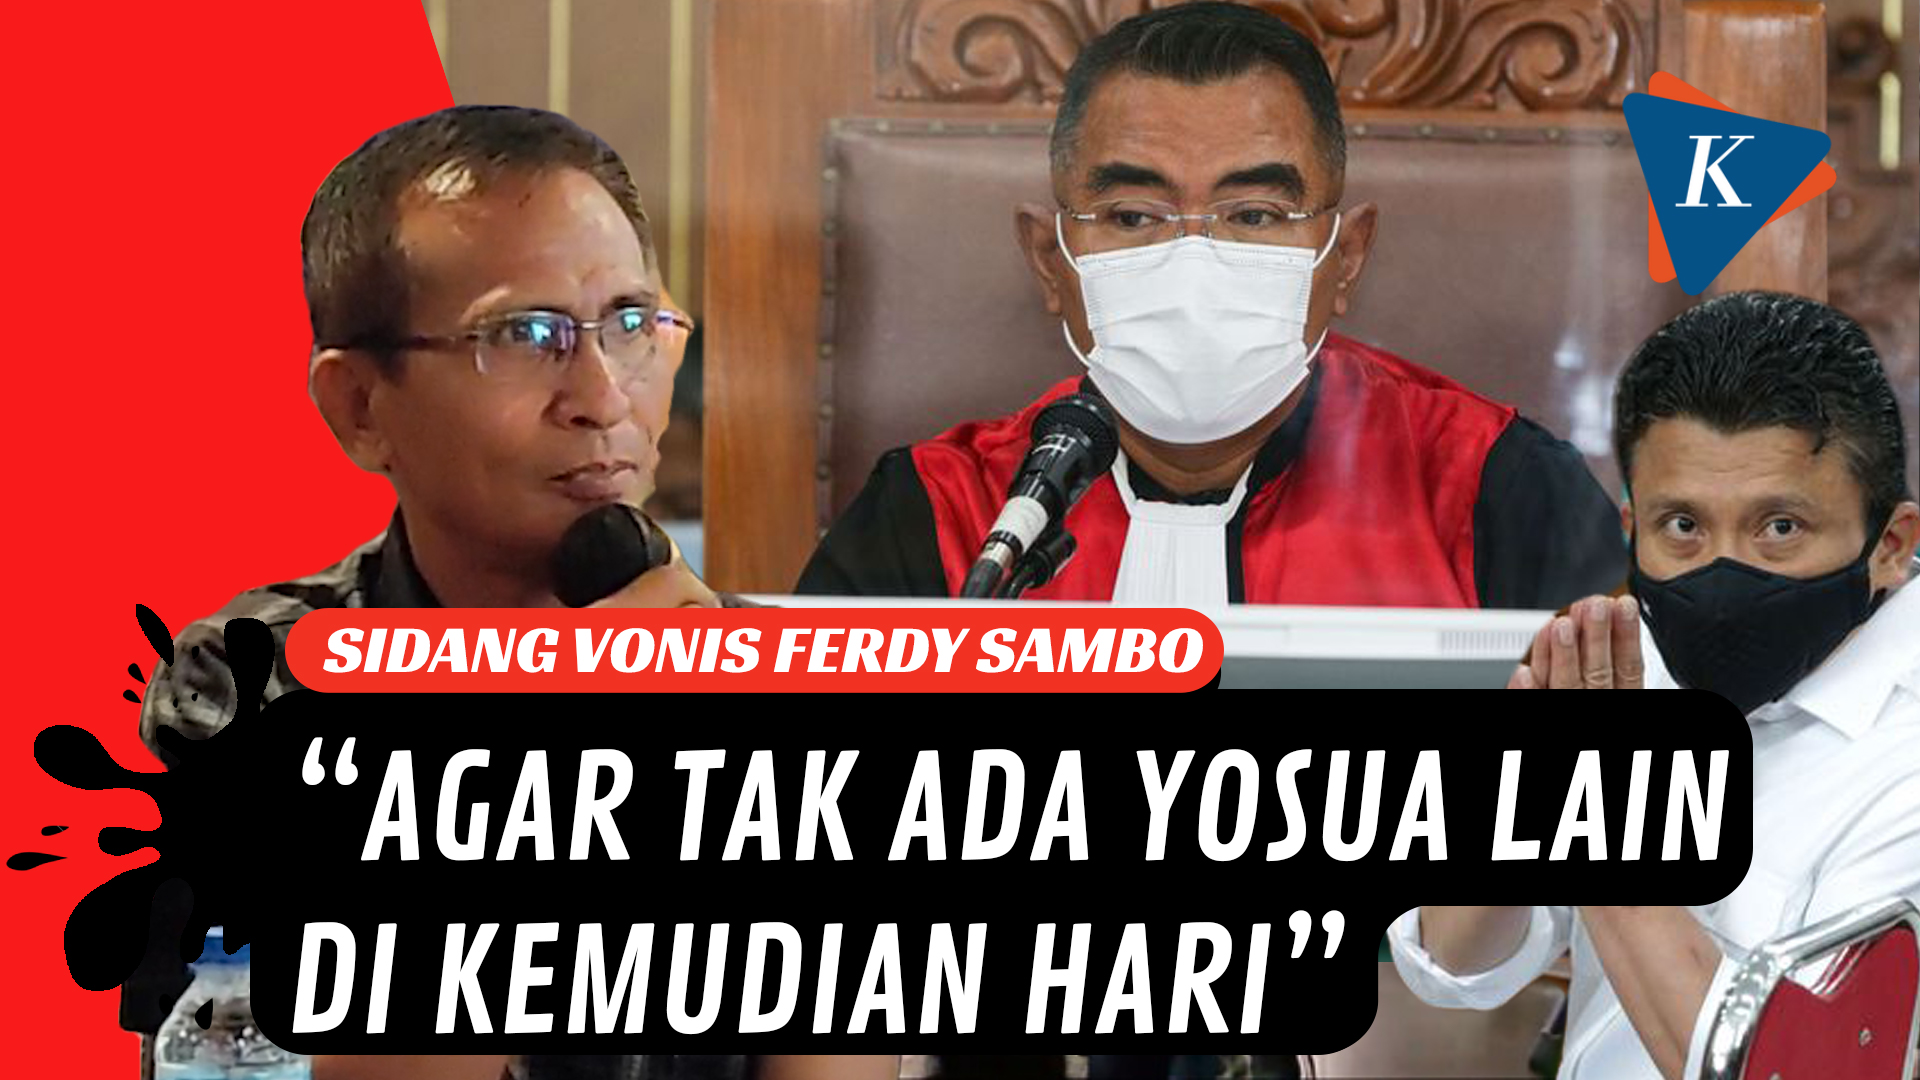 Ayah Brigadir J Berharap Ferdy Sambo Divonis Hukum Mati